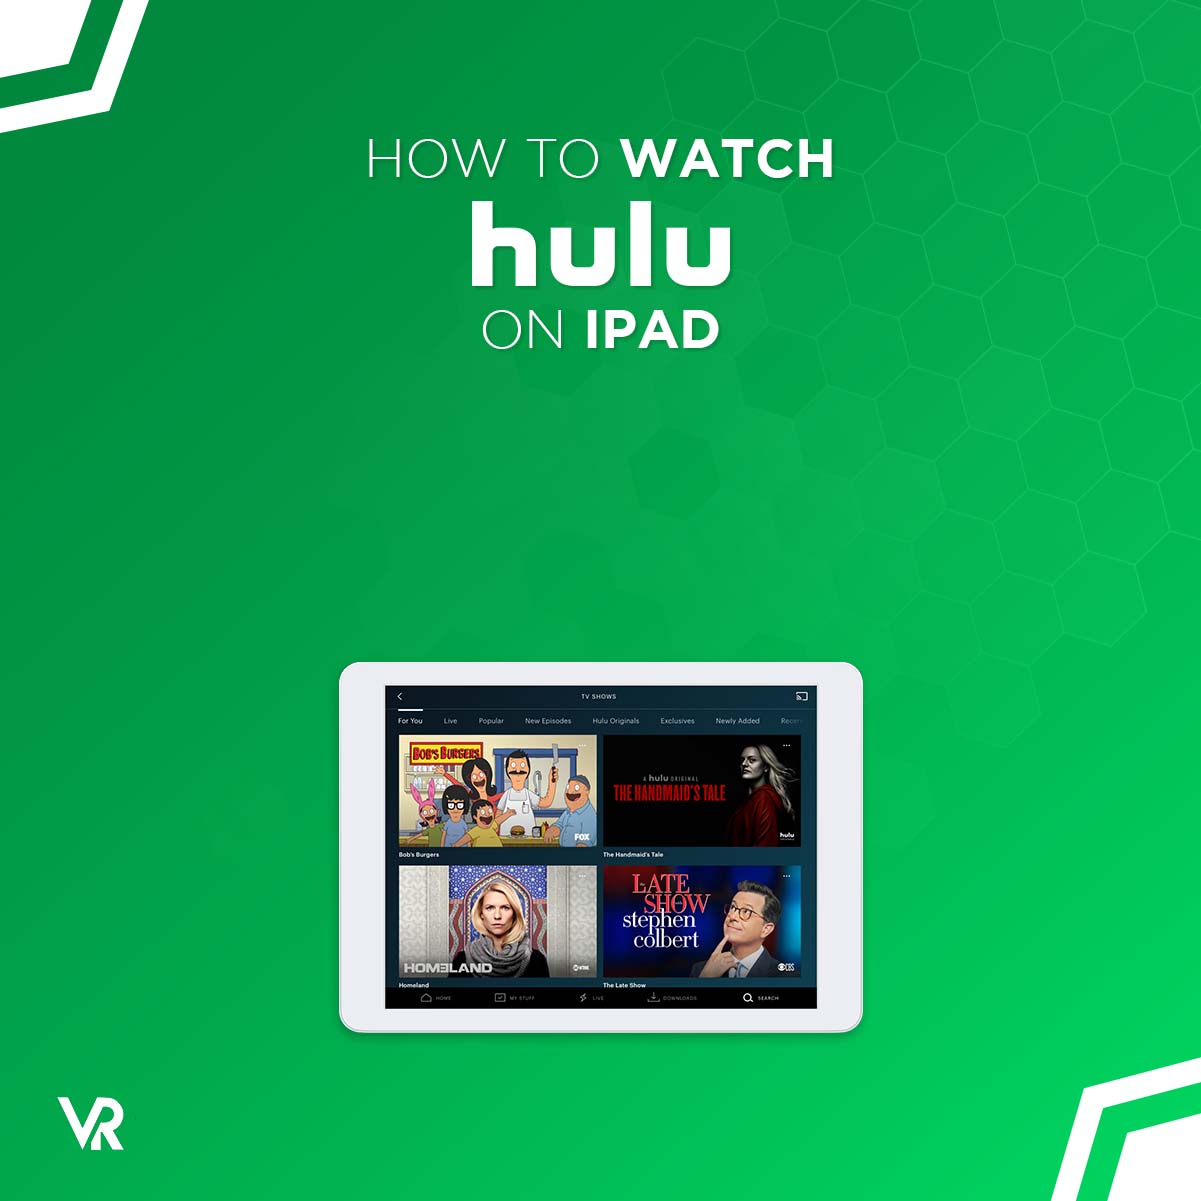 ¿Cómo hago que Hulu trabaje en mi iPad?